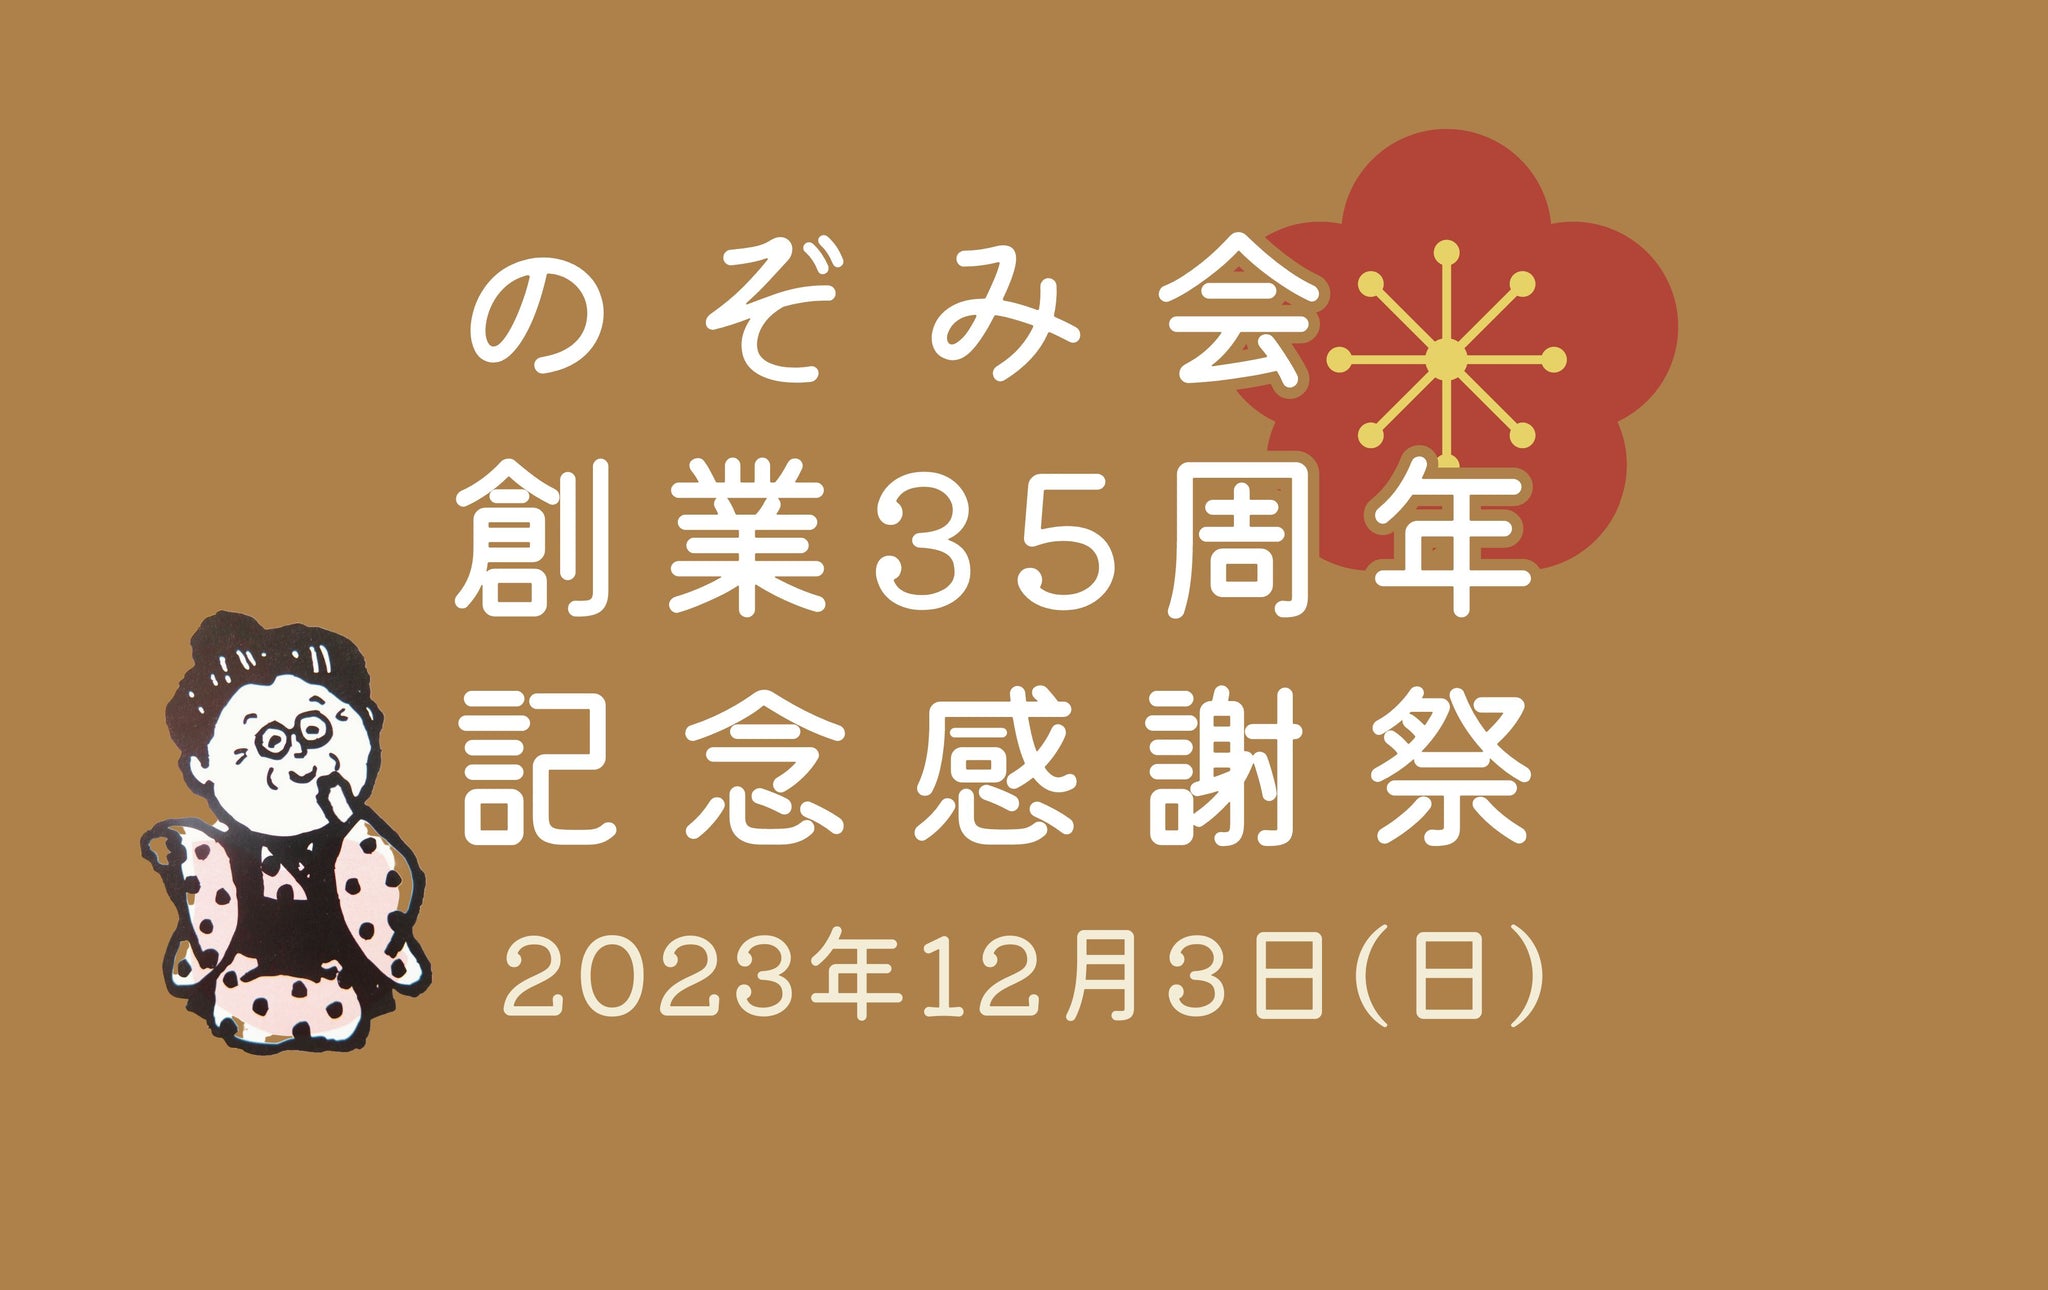 12/3㈰ は「のぞみ会創業35周年記念感謝祭」開催！